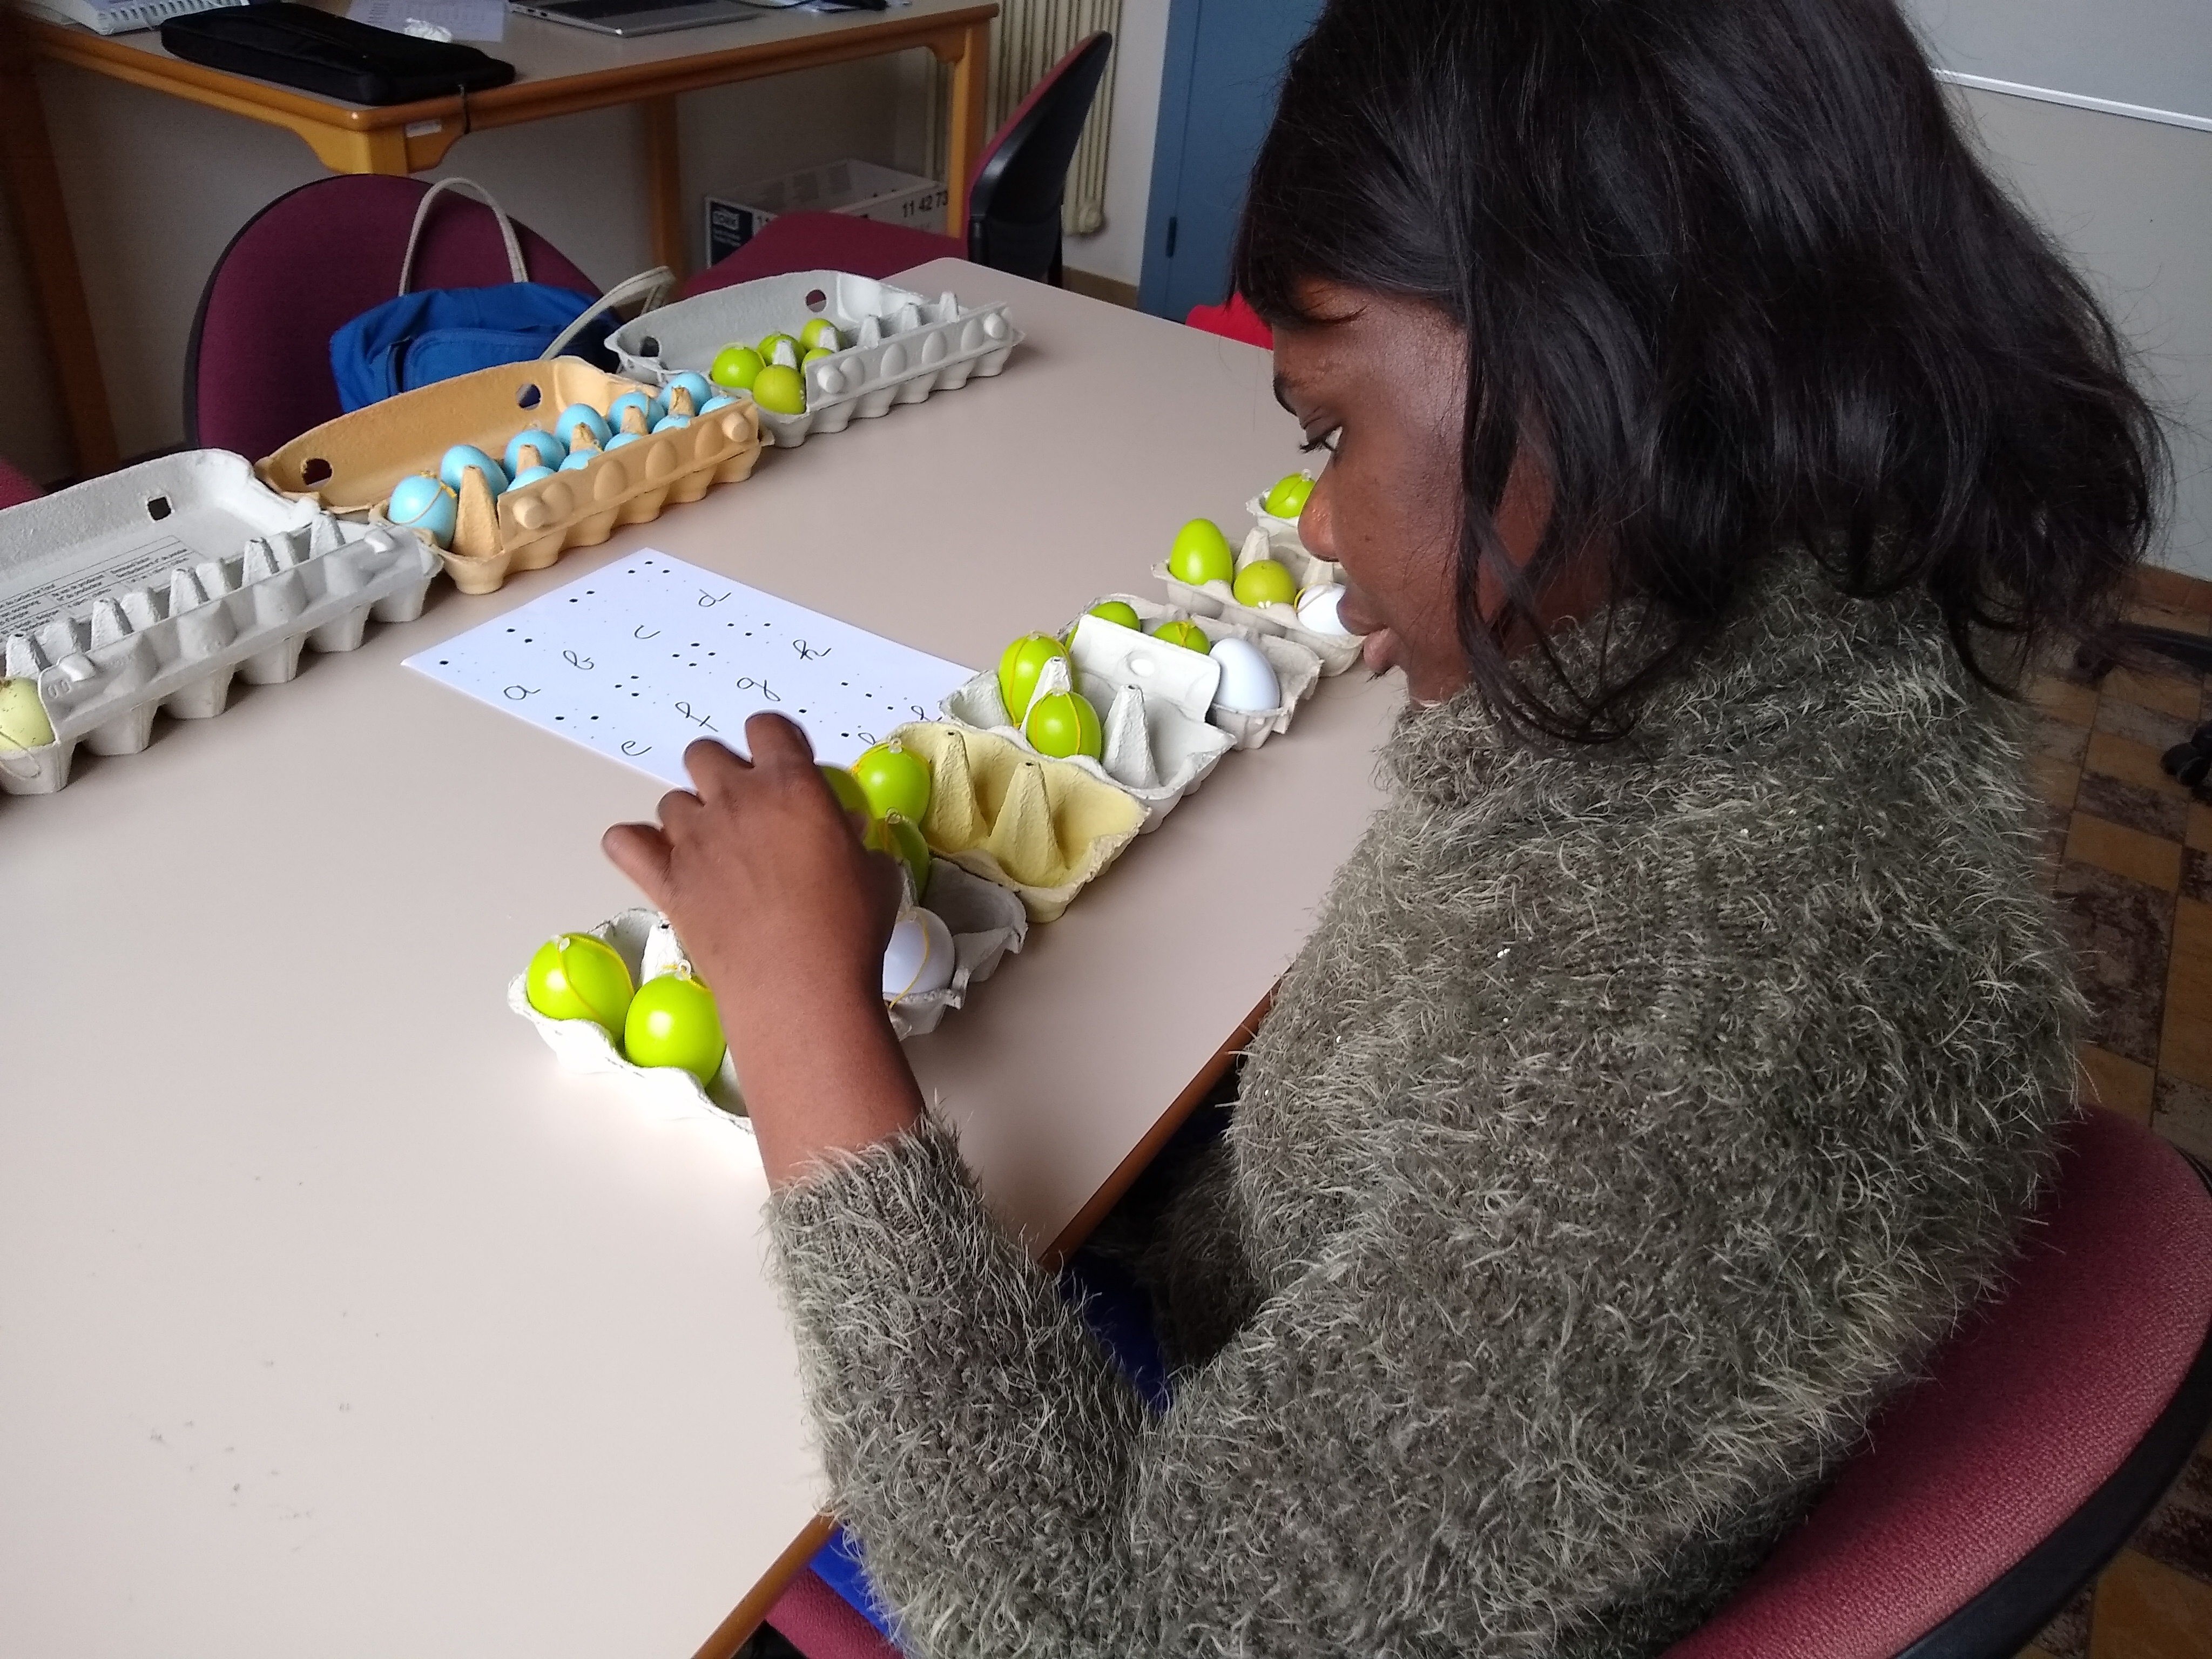 cursist leert het Braille-alfabet aan de hand van eierdozen